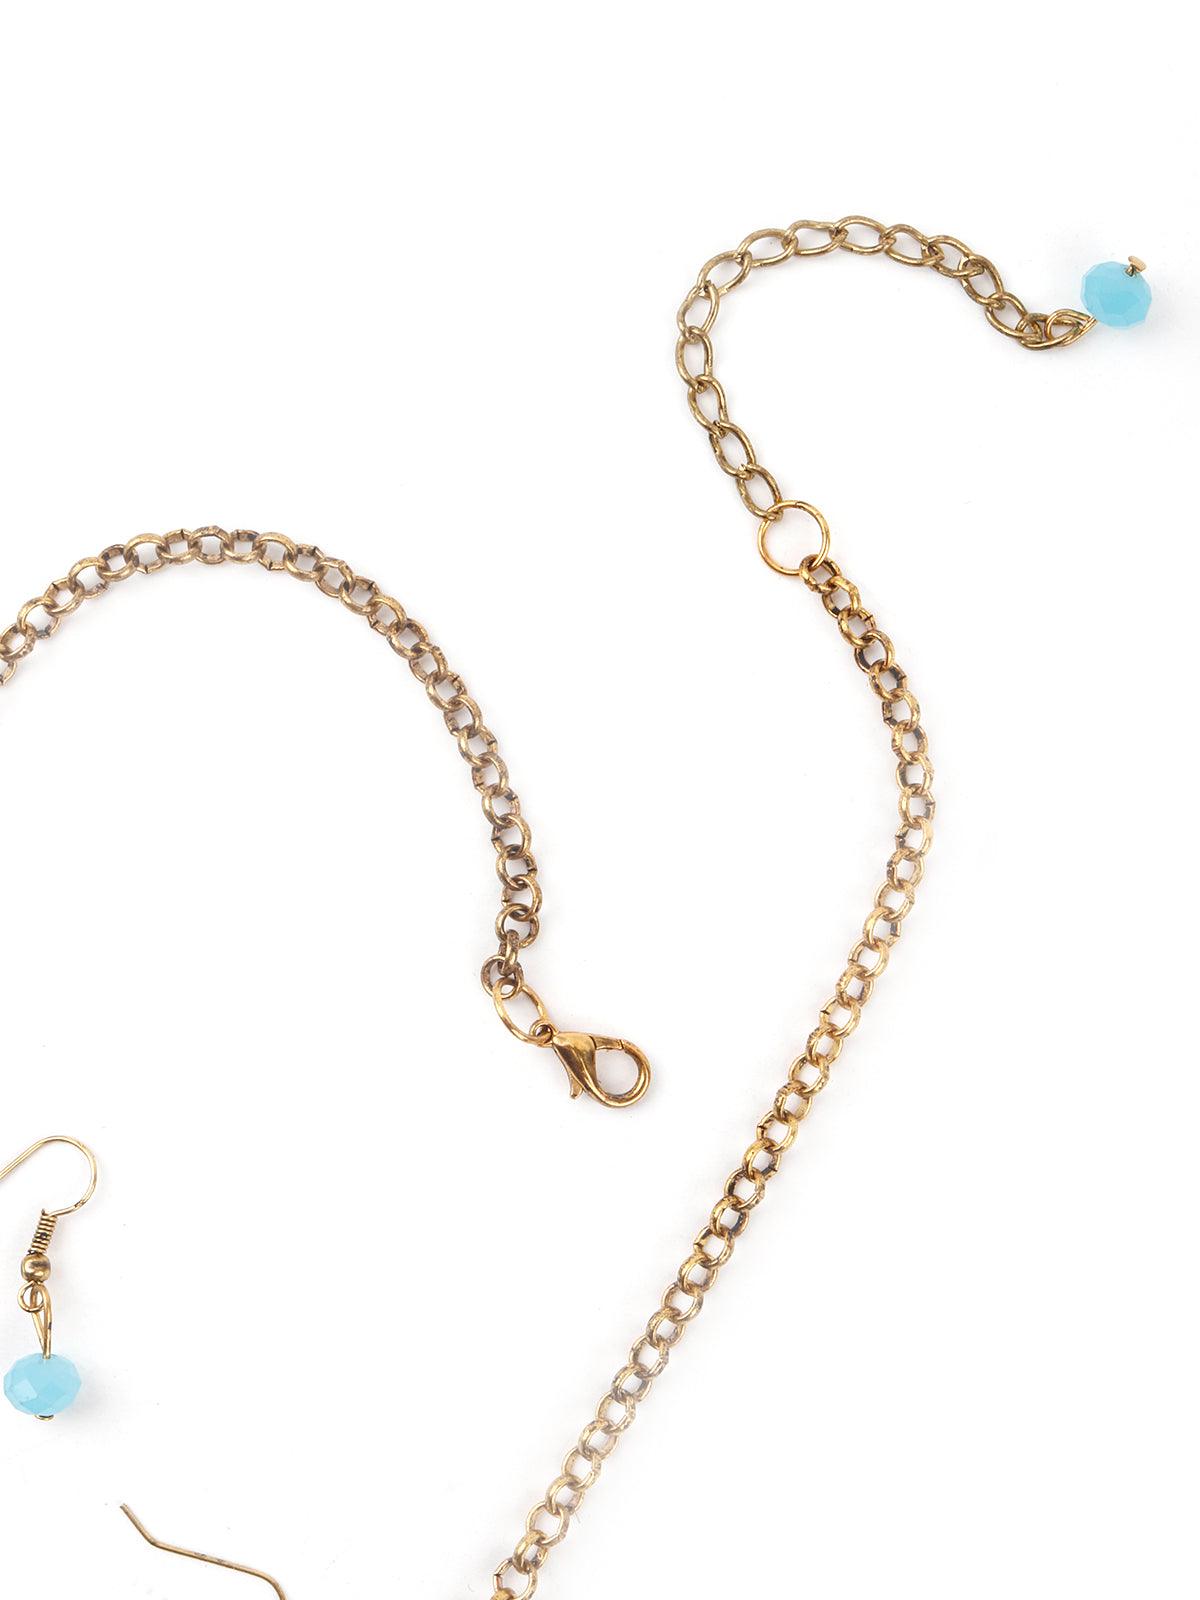 Exotic Tassel Blue Necklace Set - Odette